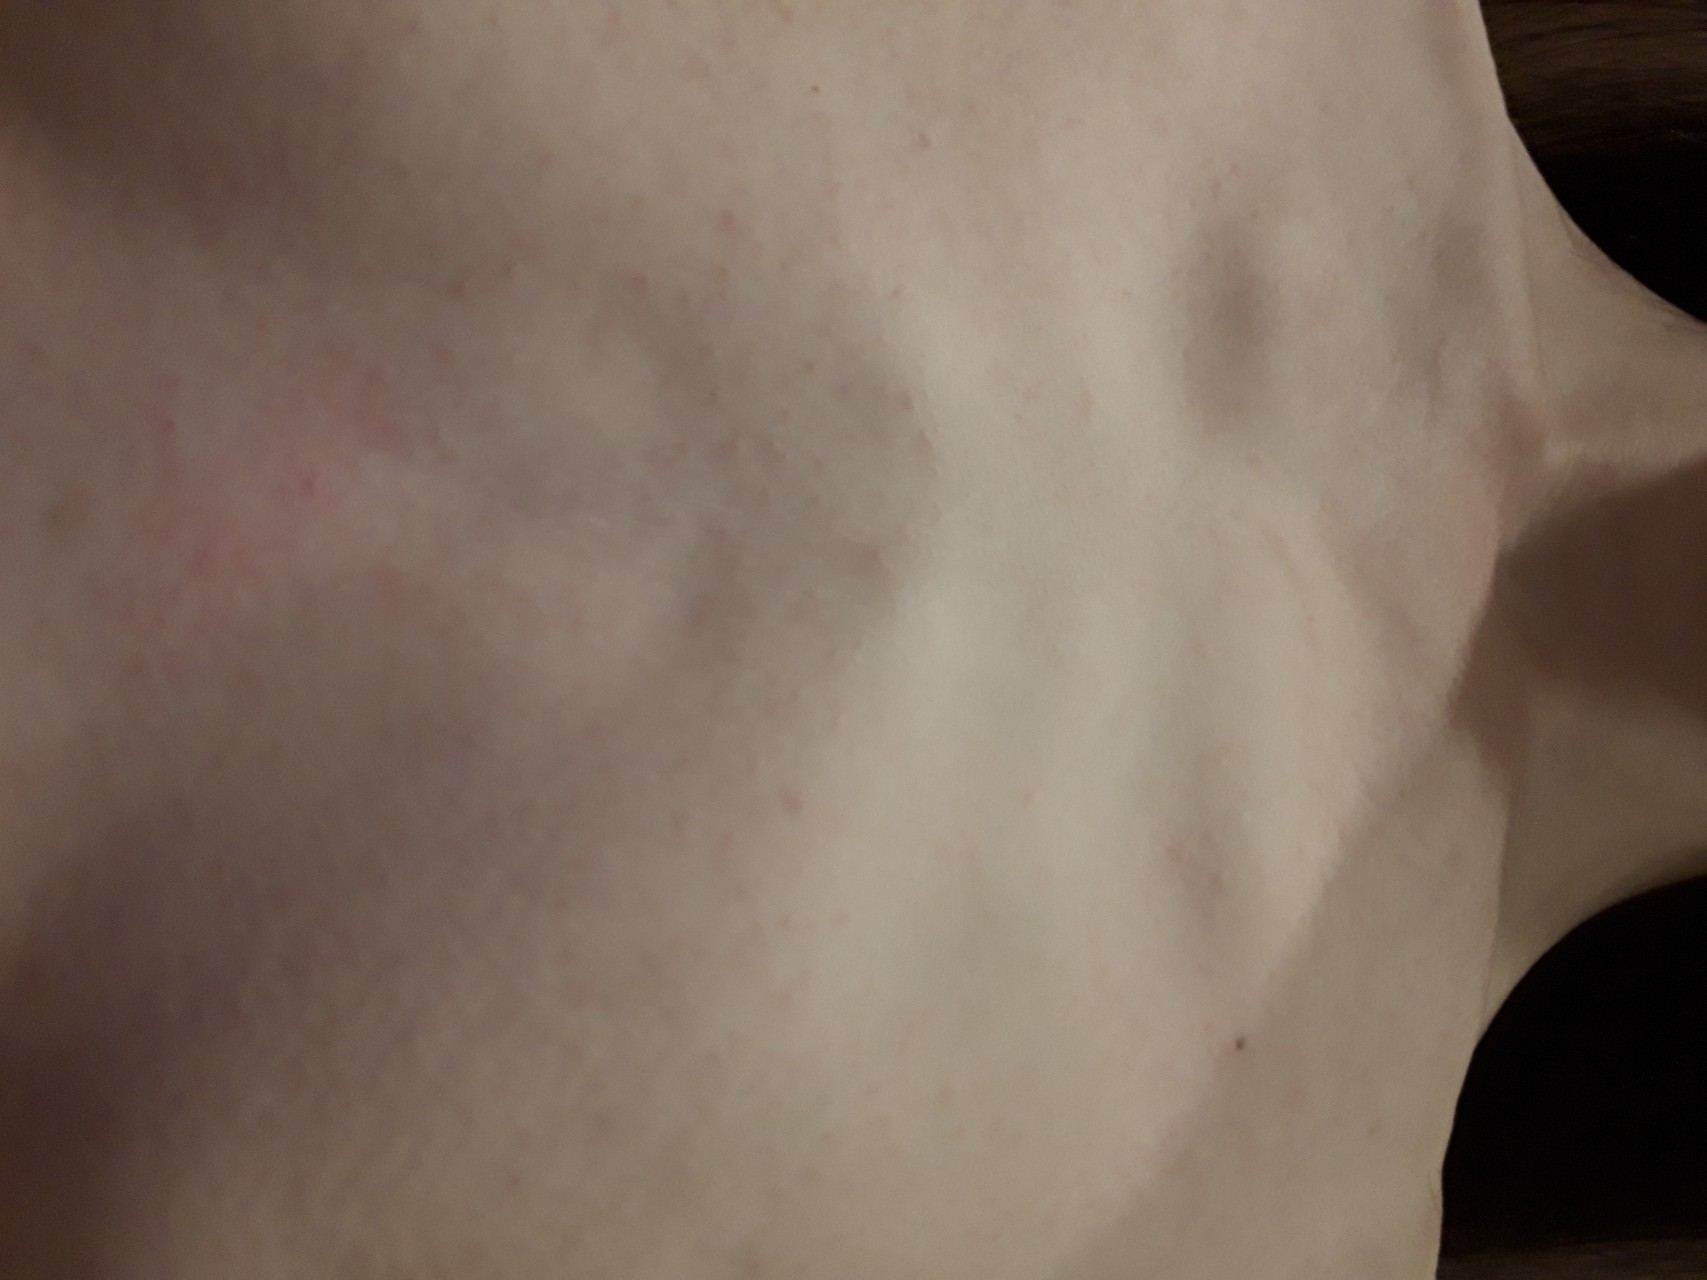 красные высыпания на груди у женщин фото 79